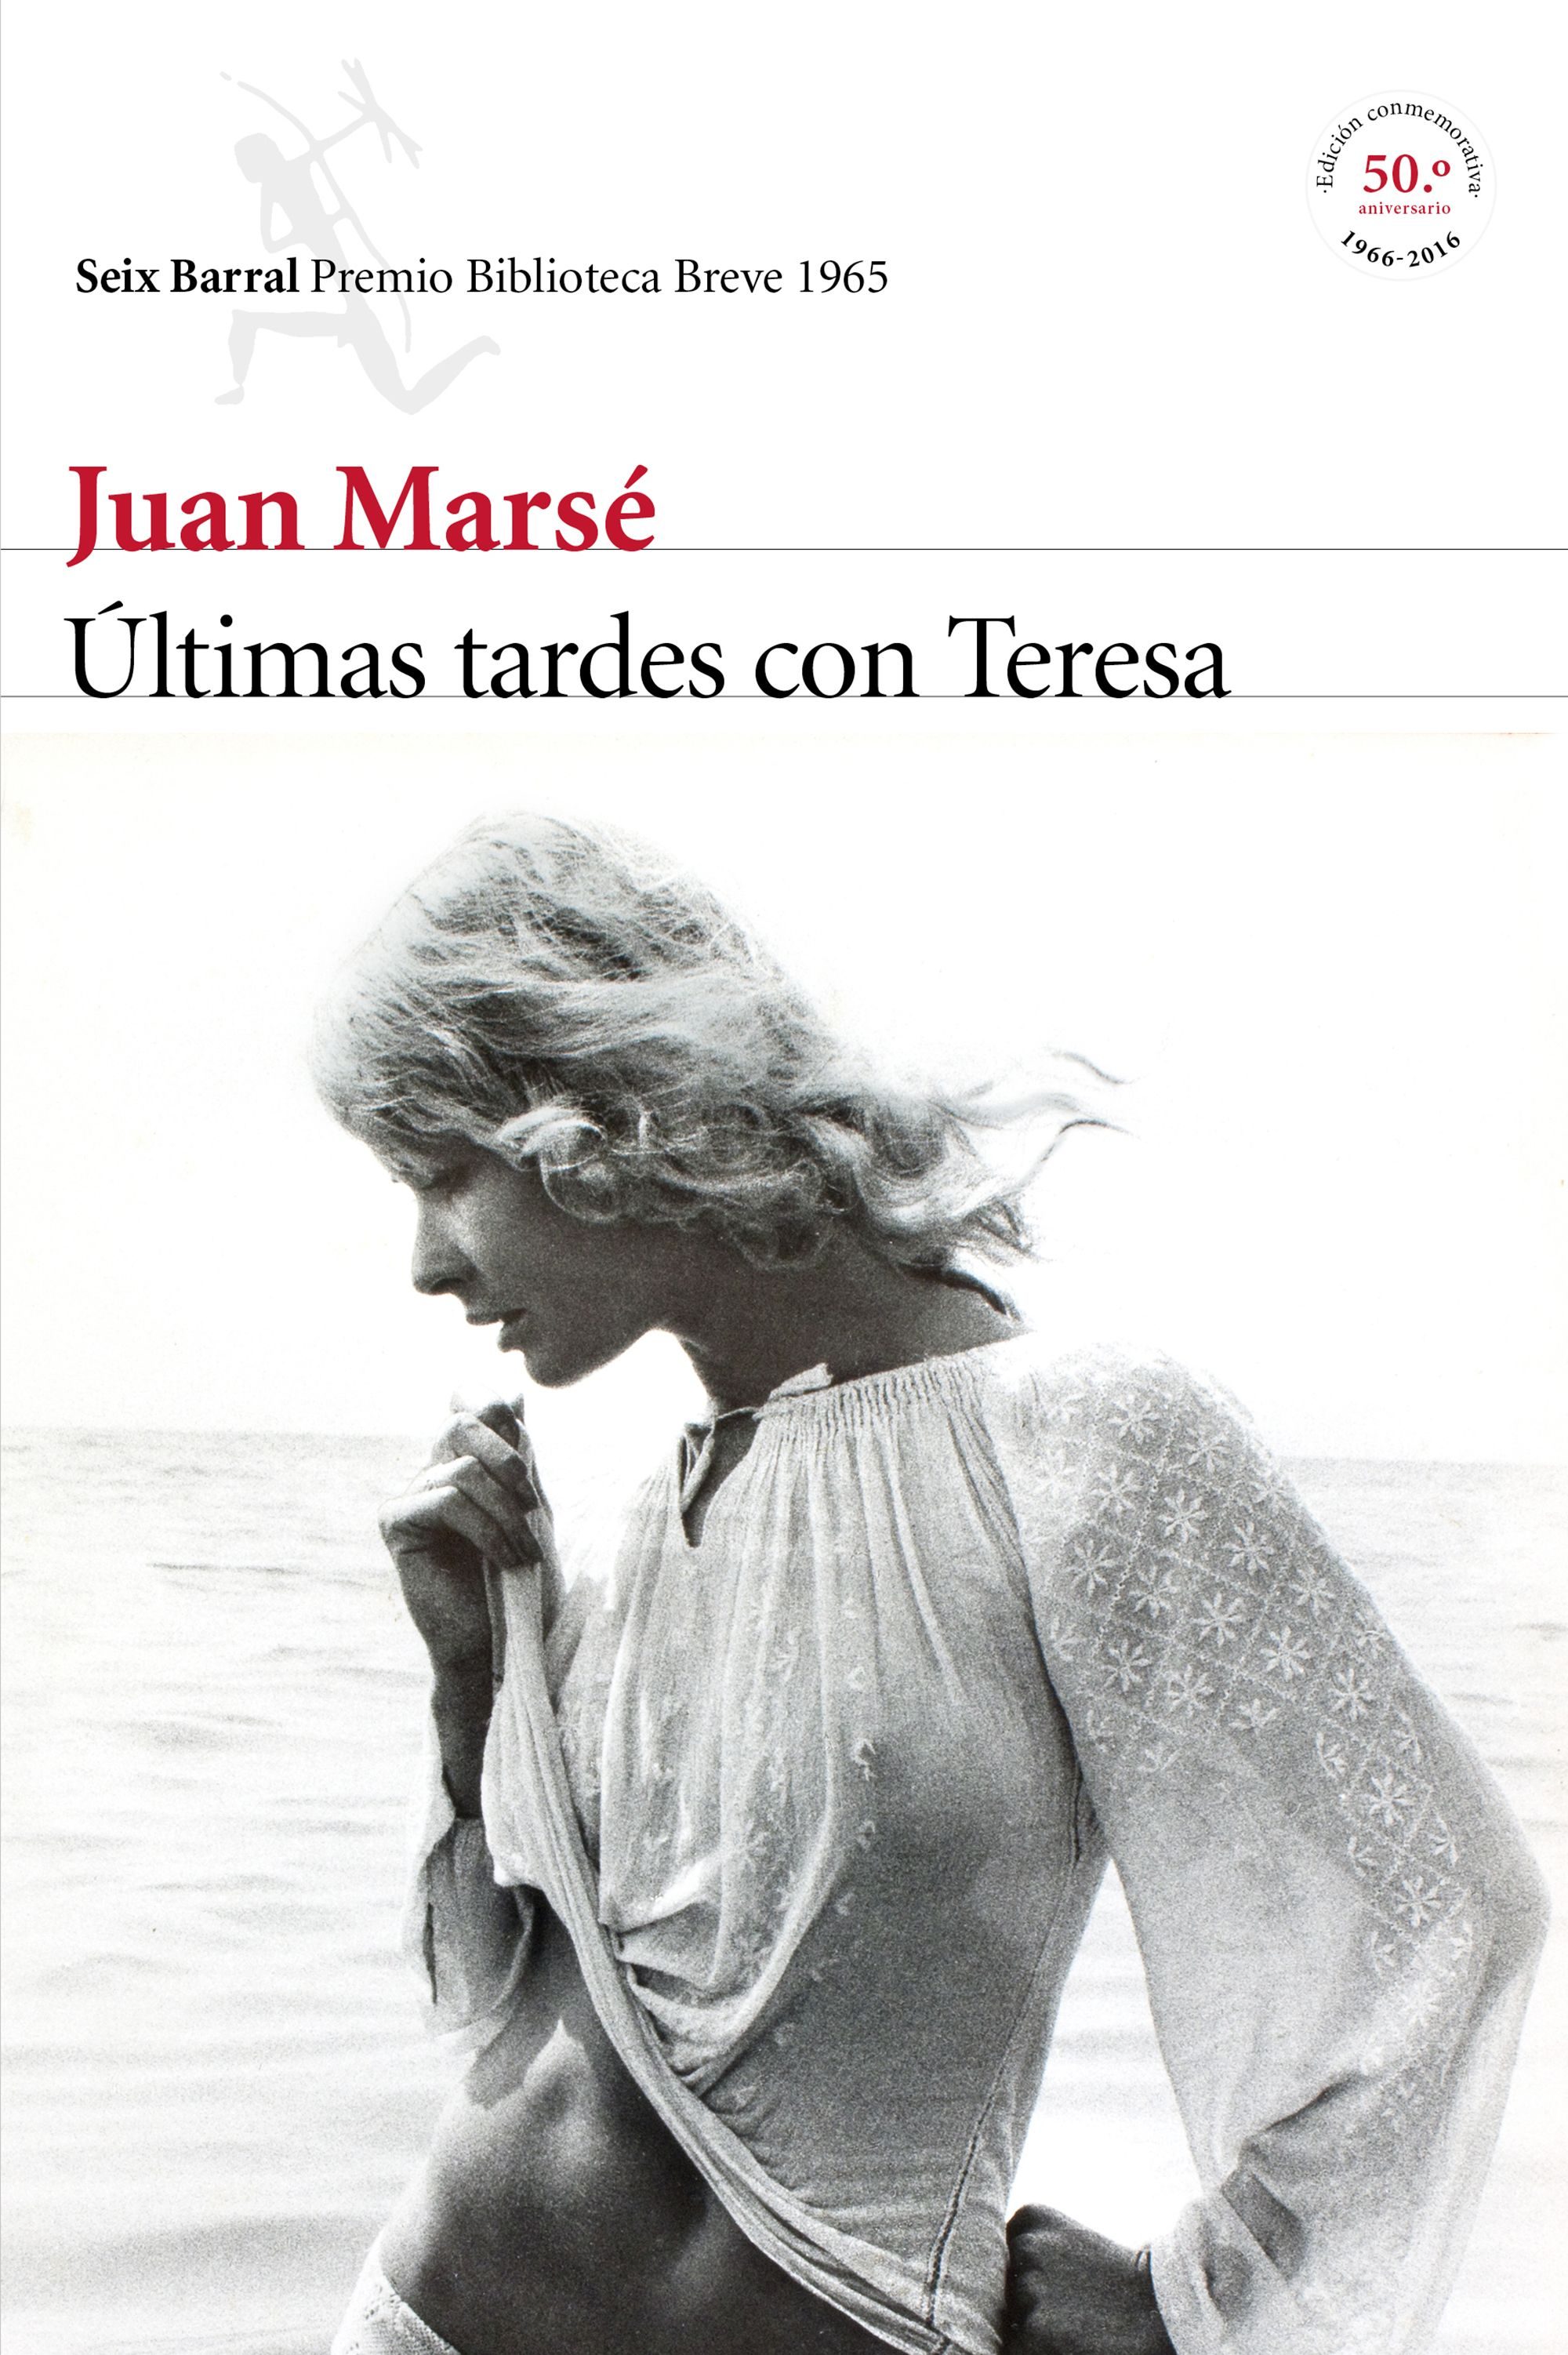 Últimas tardes con Teresa, Juan Marsé | Divagaciones y Libros